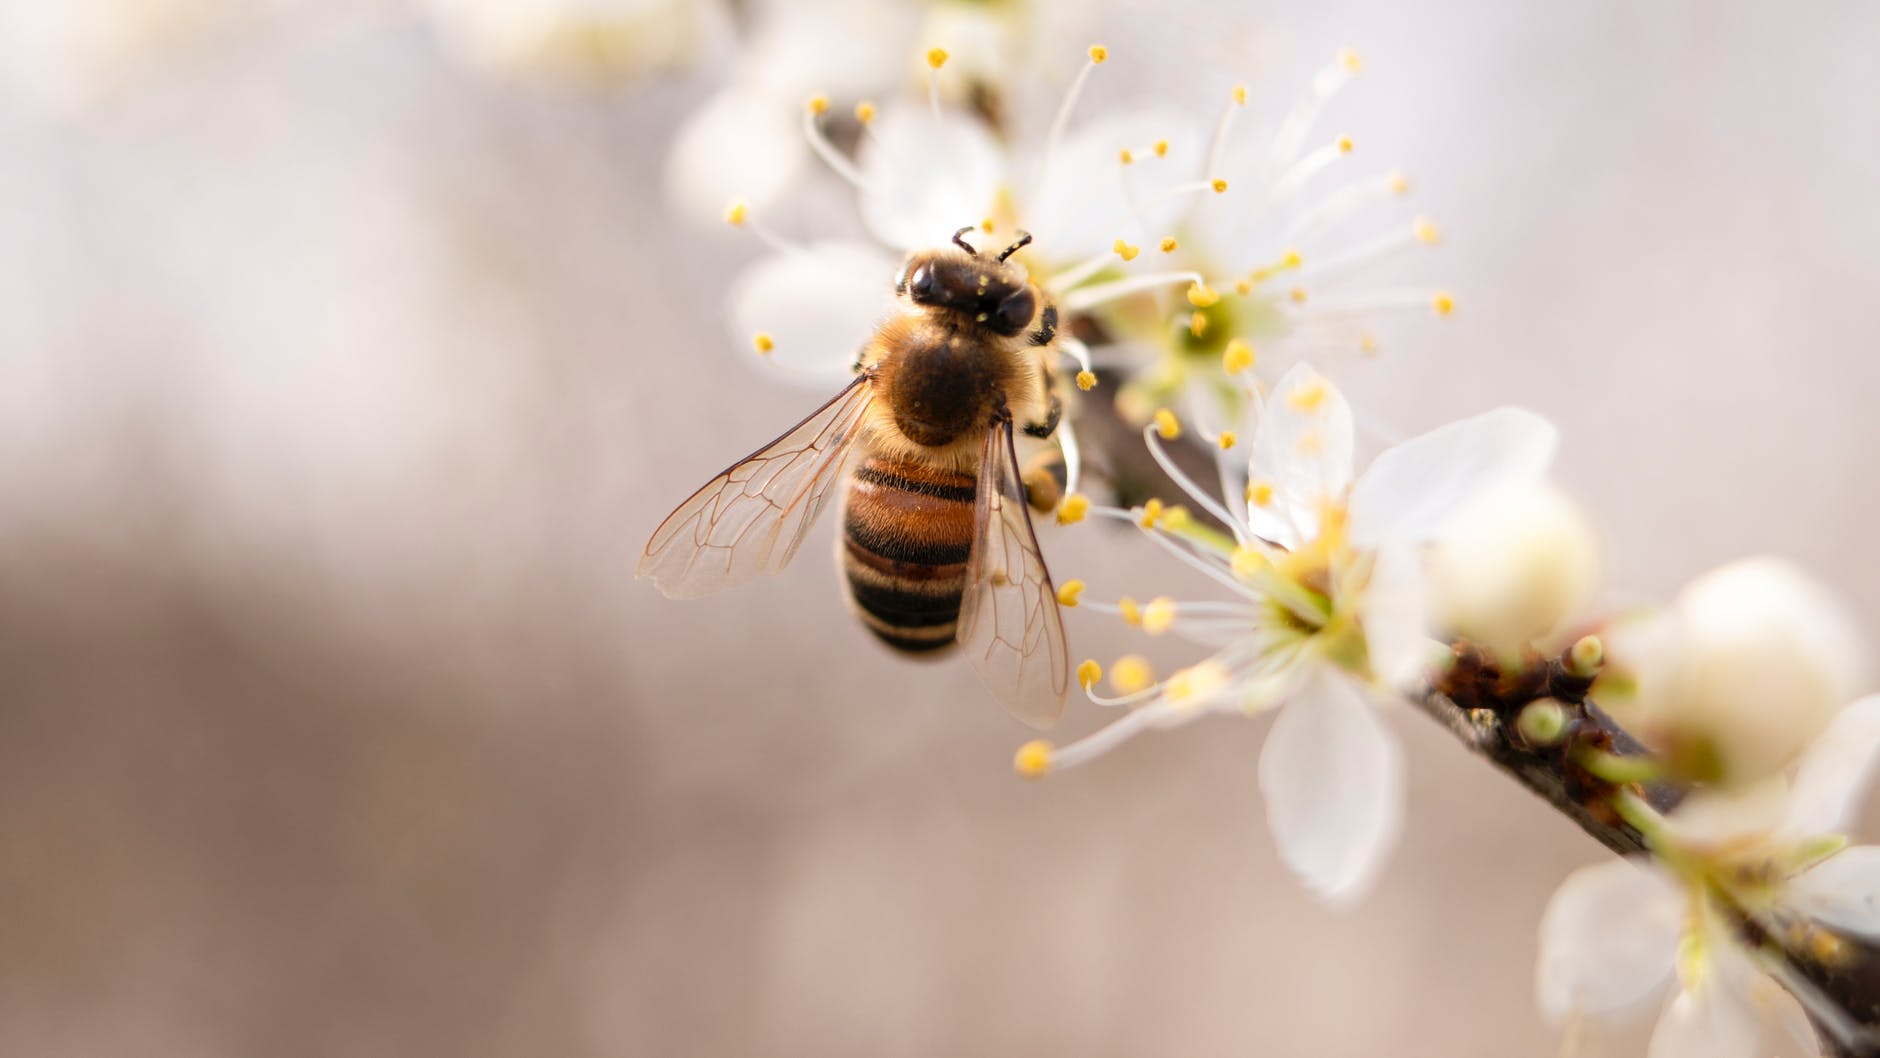 Știi ce proprietăți are veninul de albine? Este o veritabilă sursă de sănătate